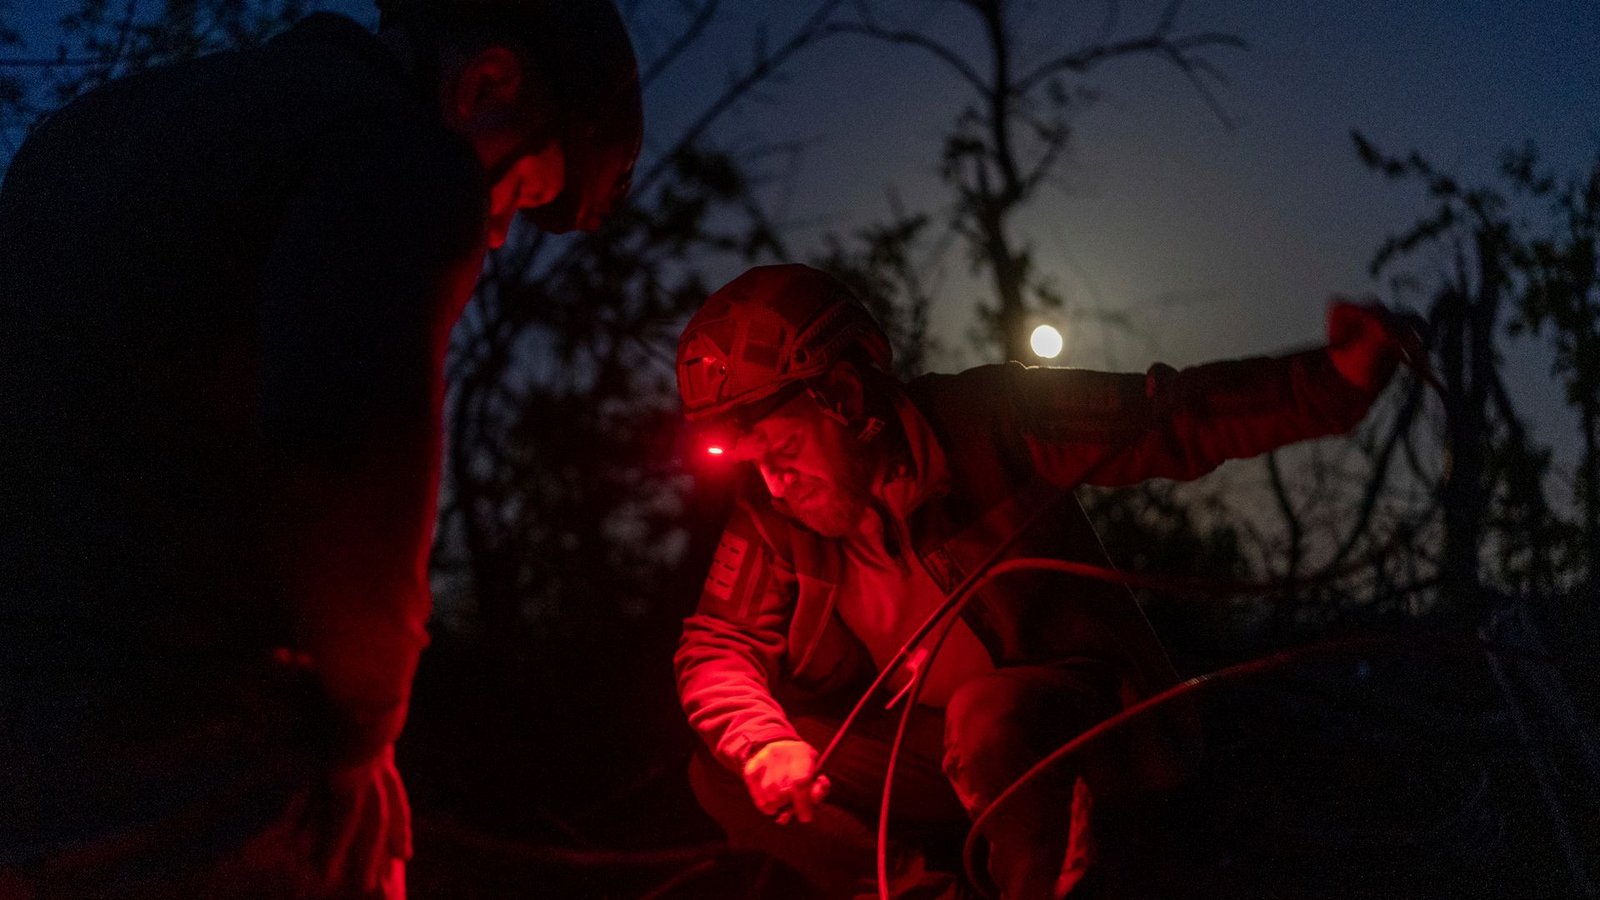 Der Ukraine fehlen Waffen und Munition. Die USA helfen: "In den nächsten Stunden" werde man damit beginnen, Ausrüstung für die Flugabwehr, Artillerie, Raketensysteme und gepanzerte Fahrzeuge zu schicken.Foto: Alex Babenko/AP/dpa